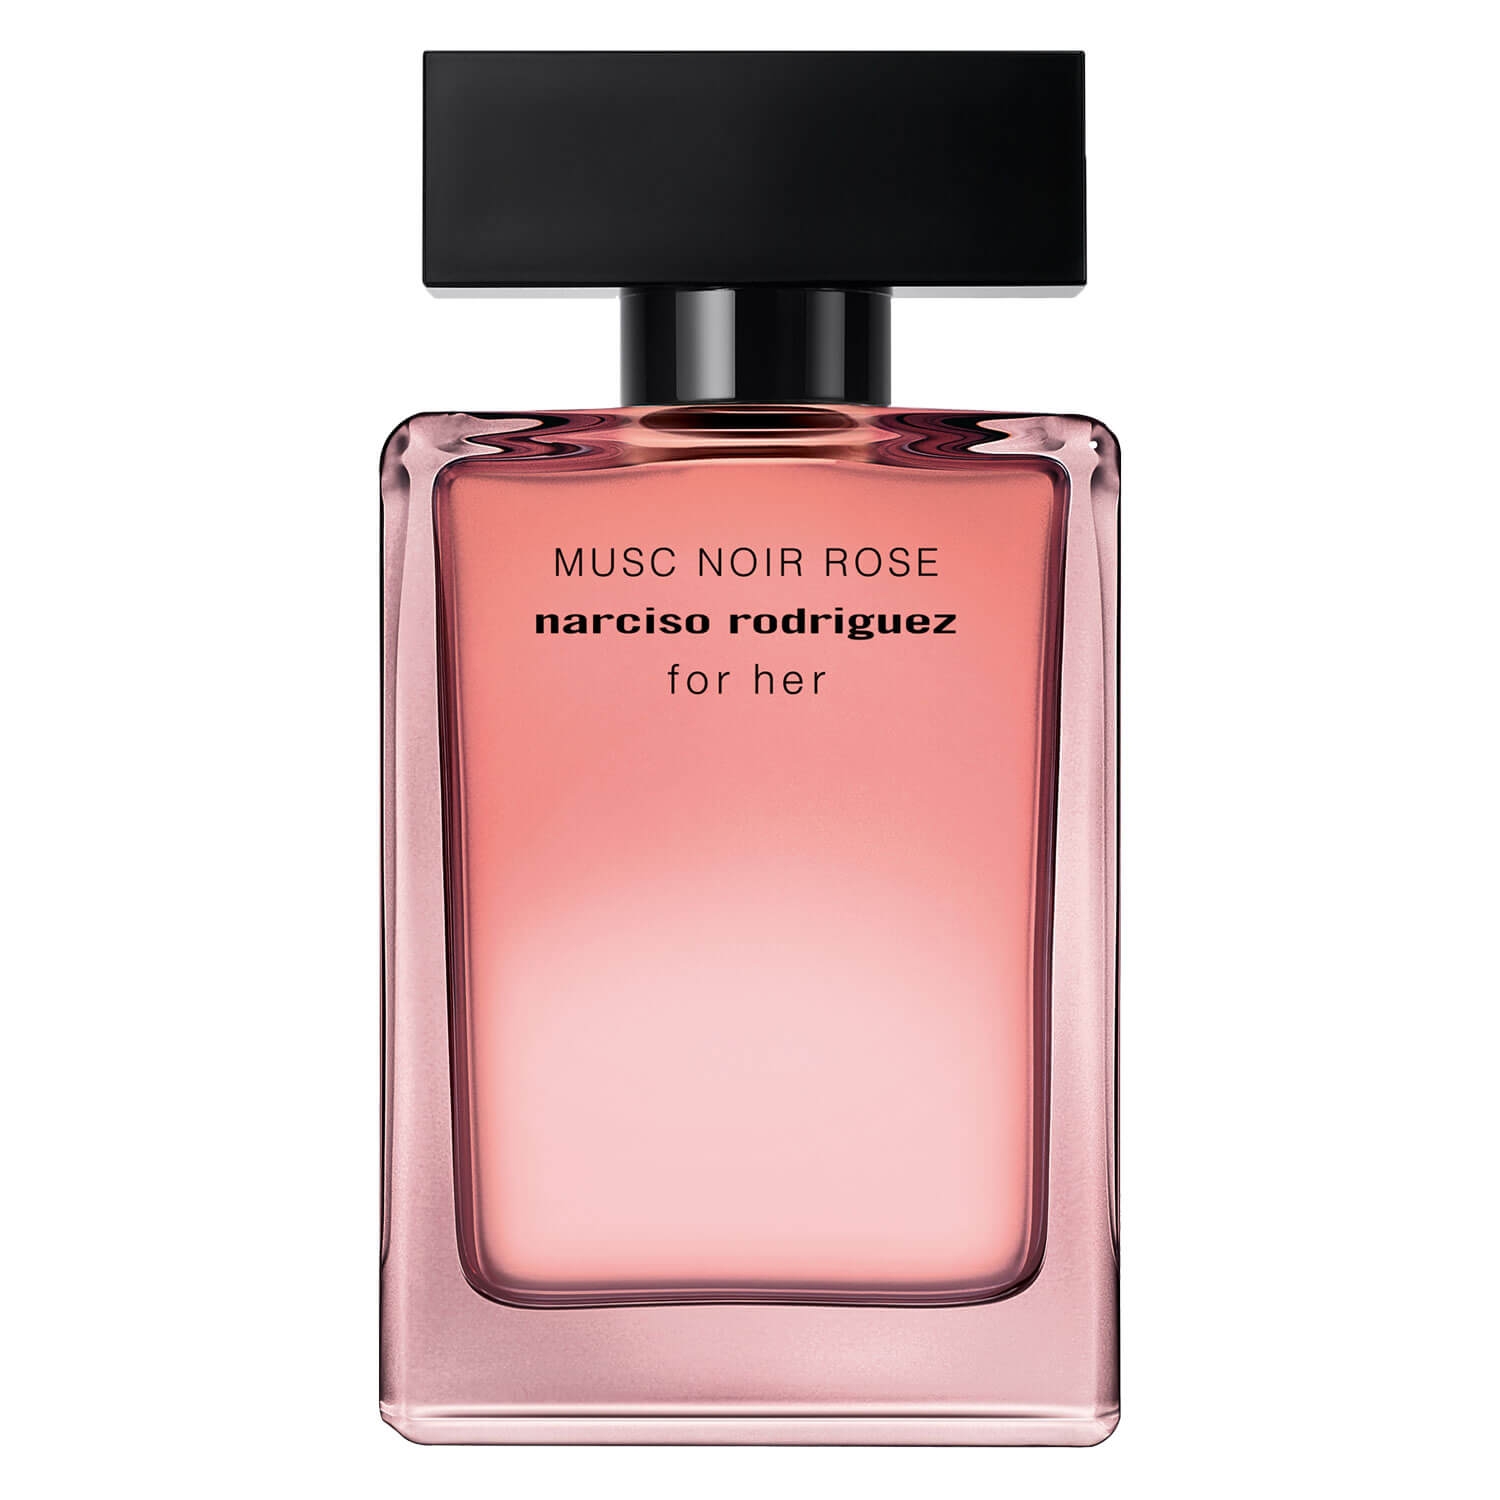 Produktbild von Narciso - For Her Musc Noir Rose Eau de Parfum